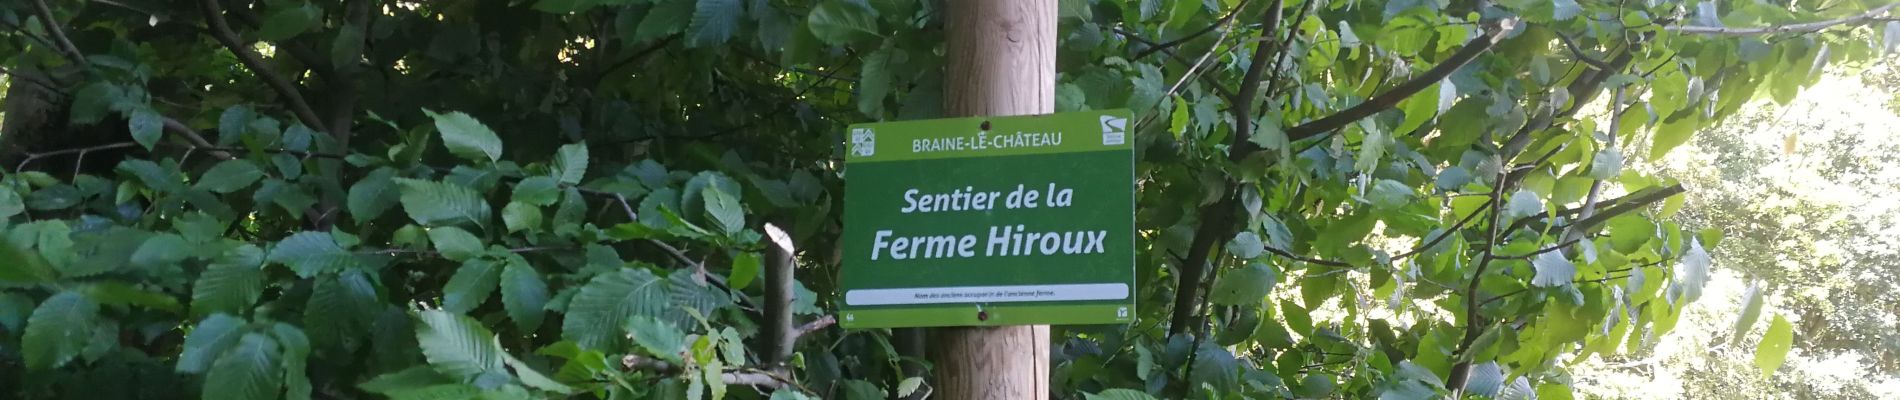 POI Itter - Sentier de la ferme Hiroux (affichage Braine-Le-Château) - Photo